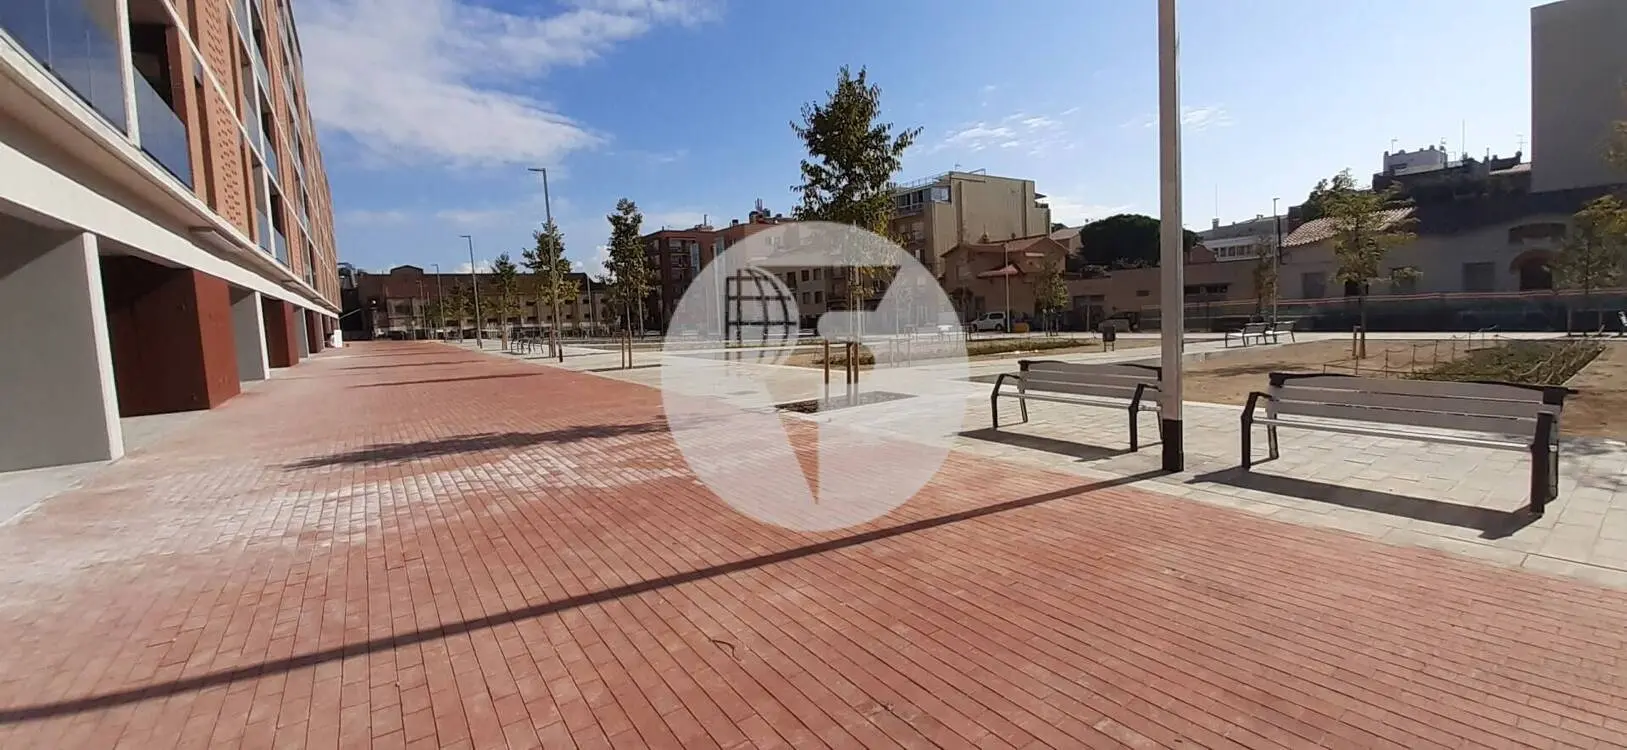 Local comercial de Obra Nueva en Sabadell IE-220759 2